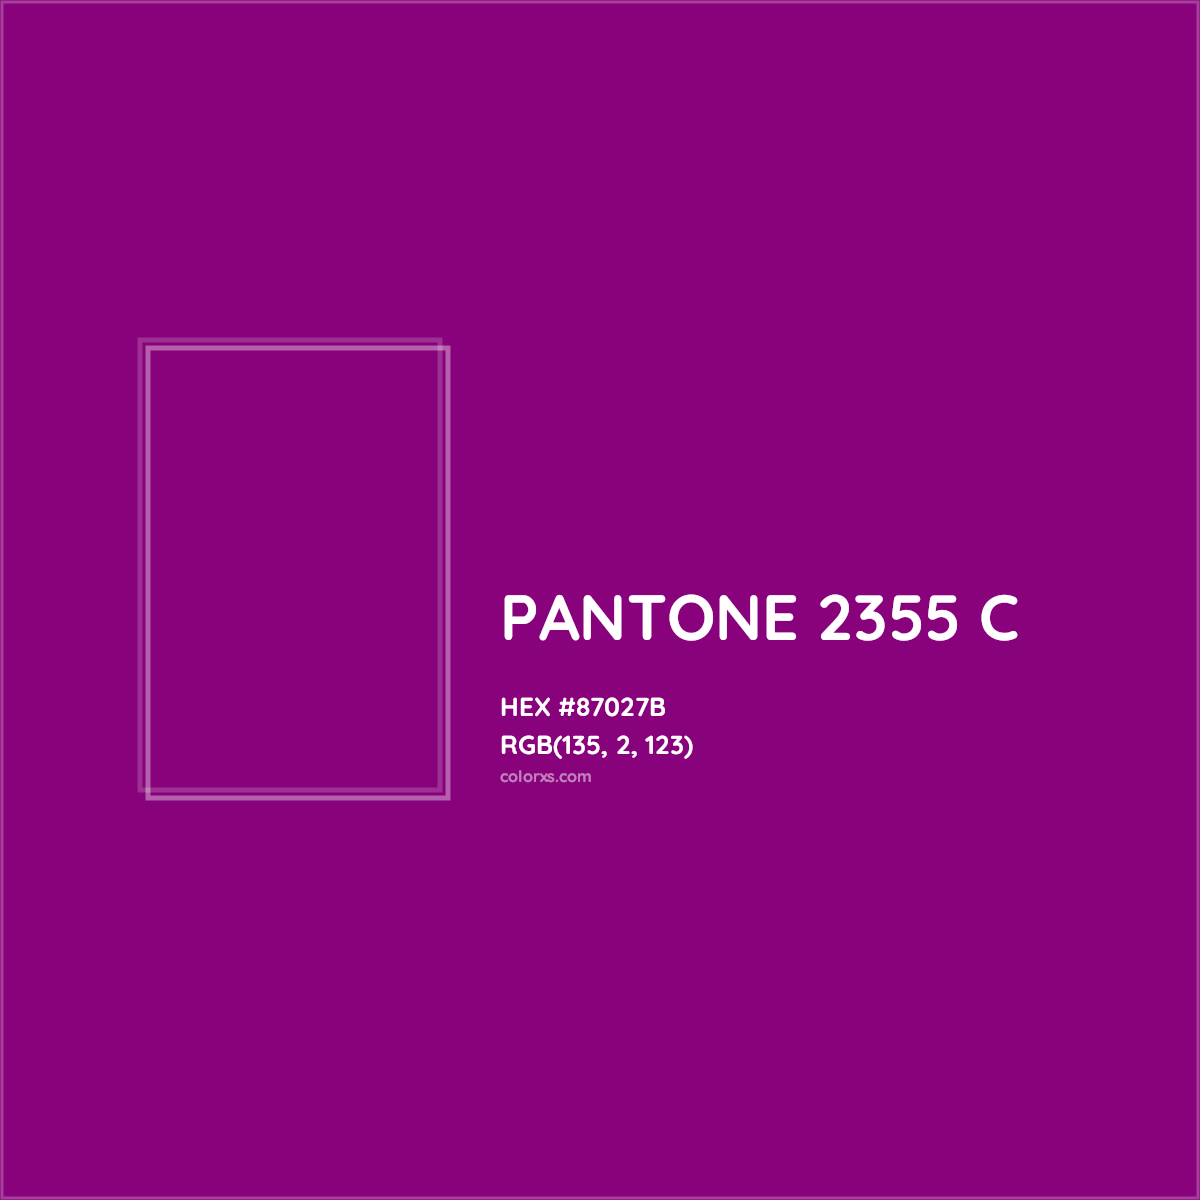 HEX #87027B PANTONE 2355 C CMS Pantone PMS - Color Code